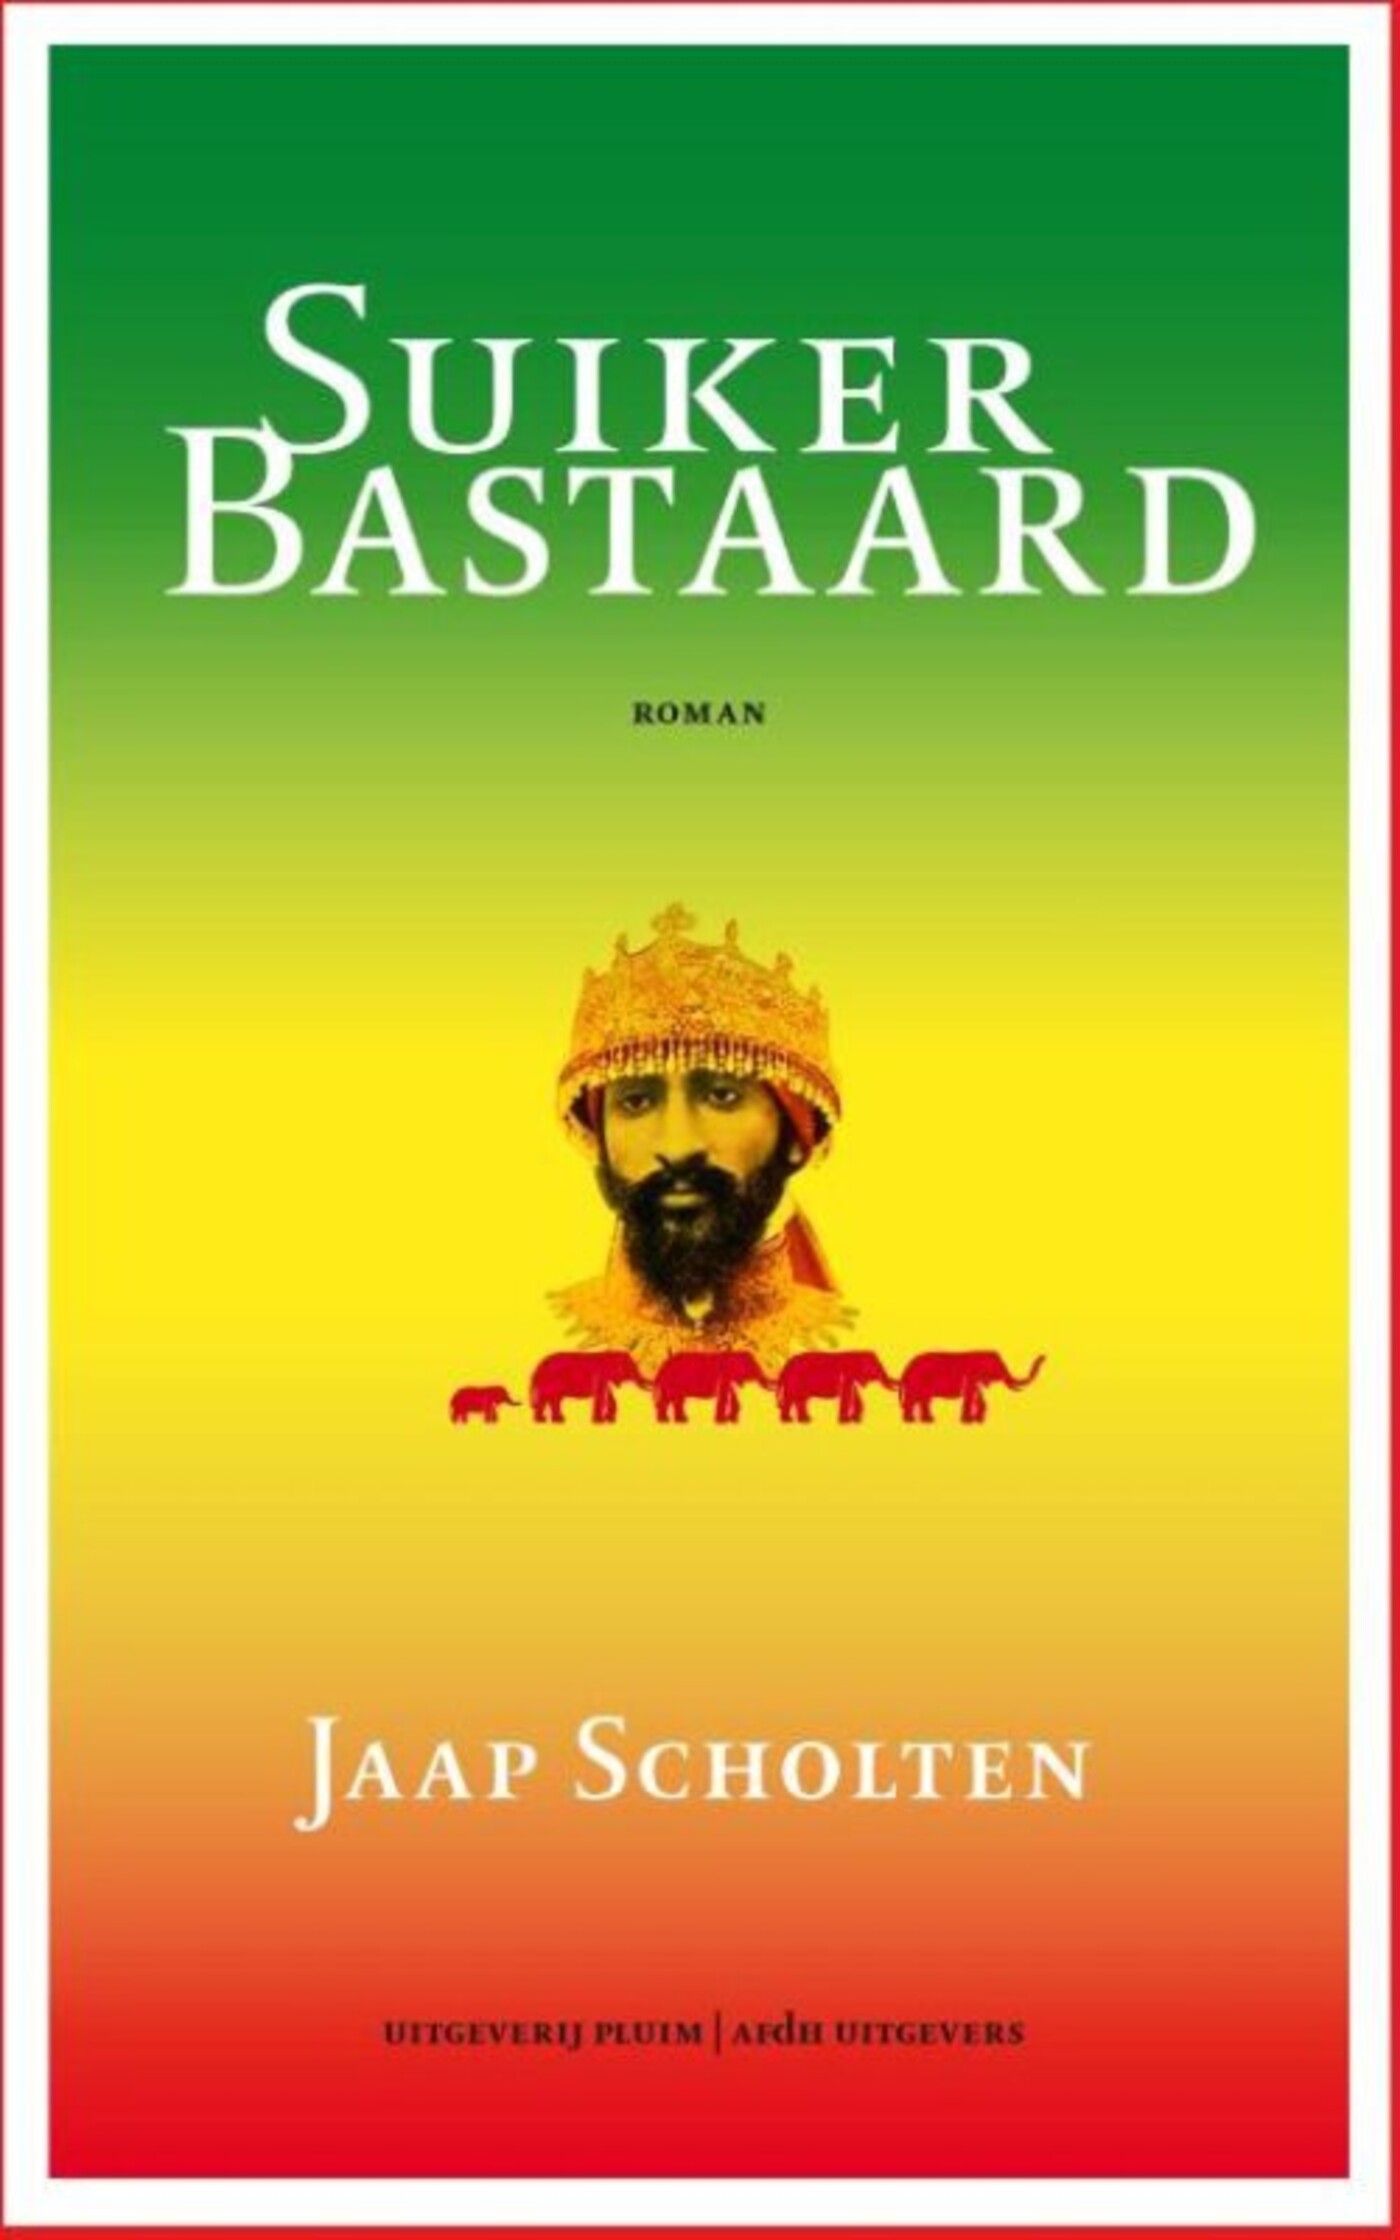 #377 - Jaap Scholten over zijn nieuwe boek 'Suikerbastaard'